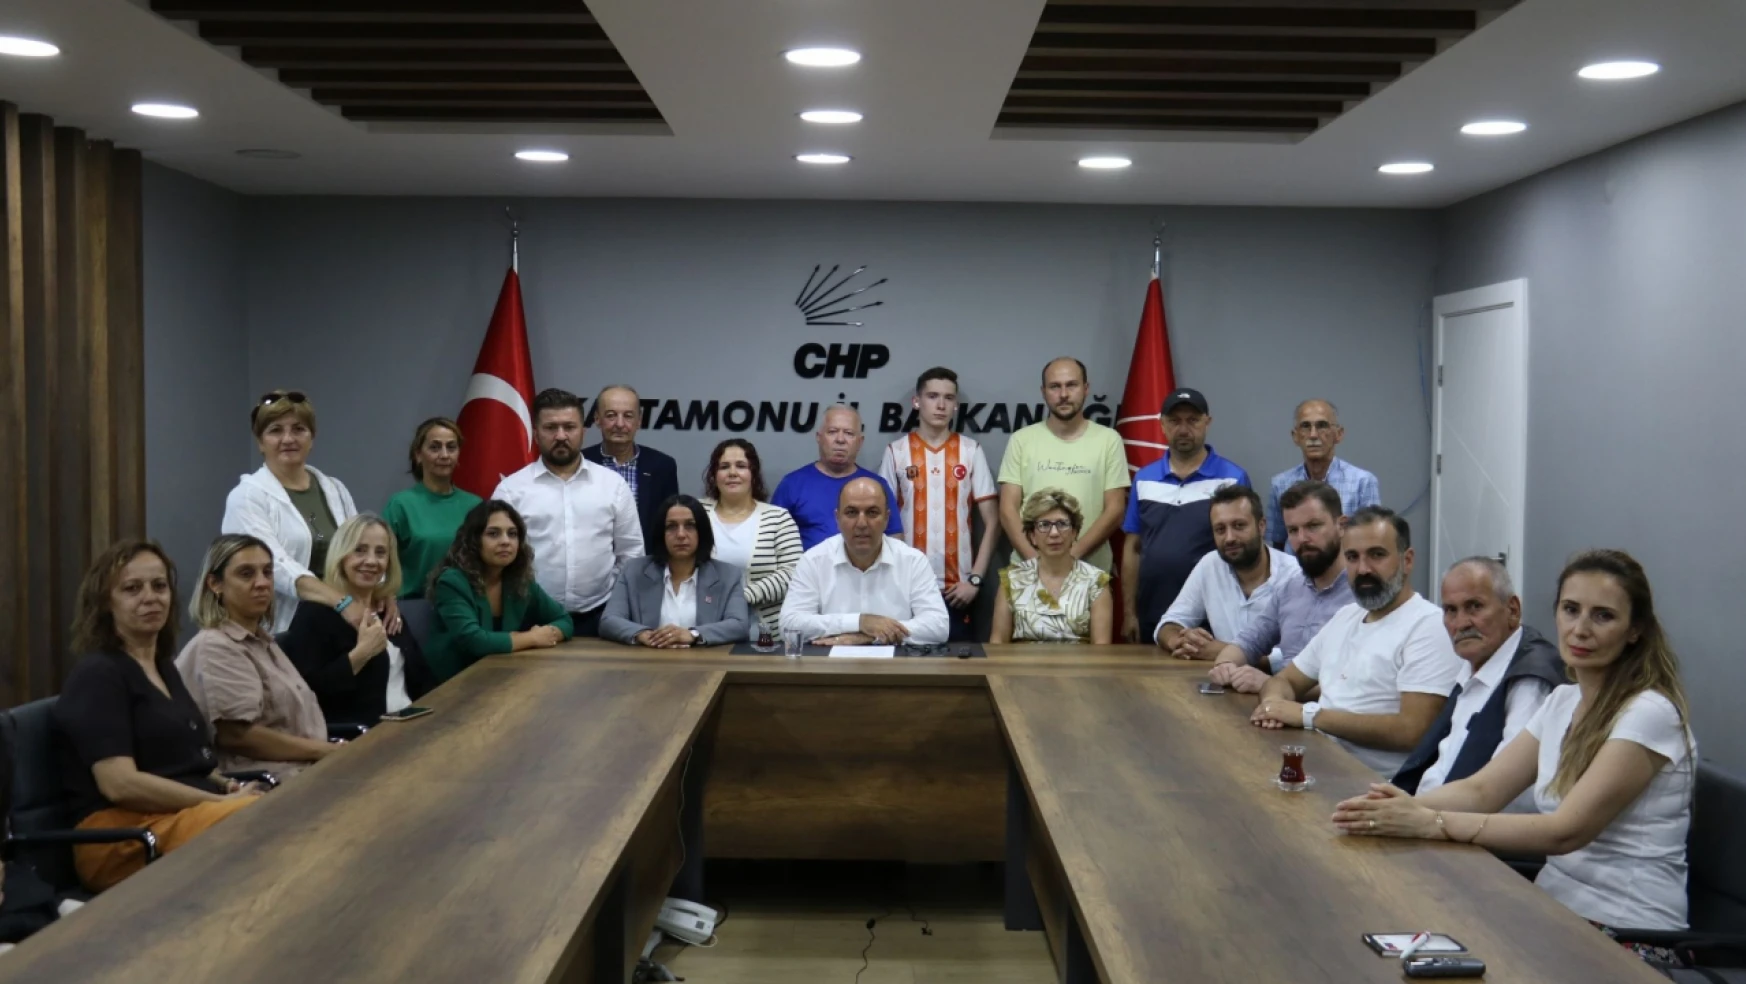 CHP İl Başkanı Hikmet Erbilgin: 'Fahiş zamları doğru bulmuyoruz'